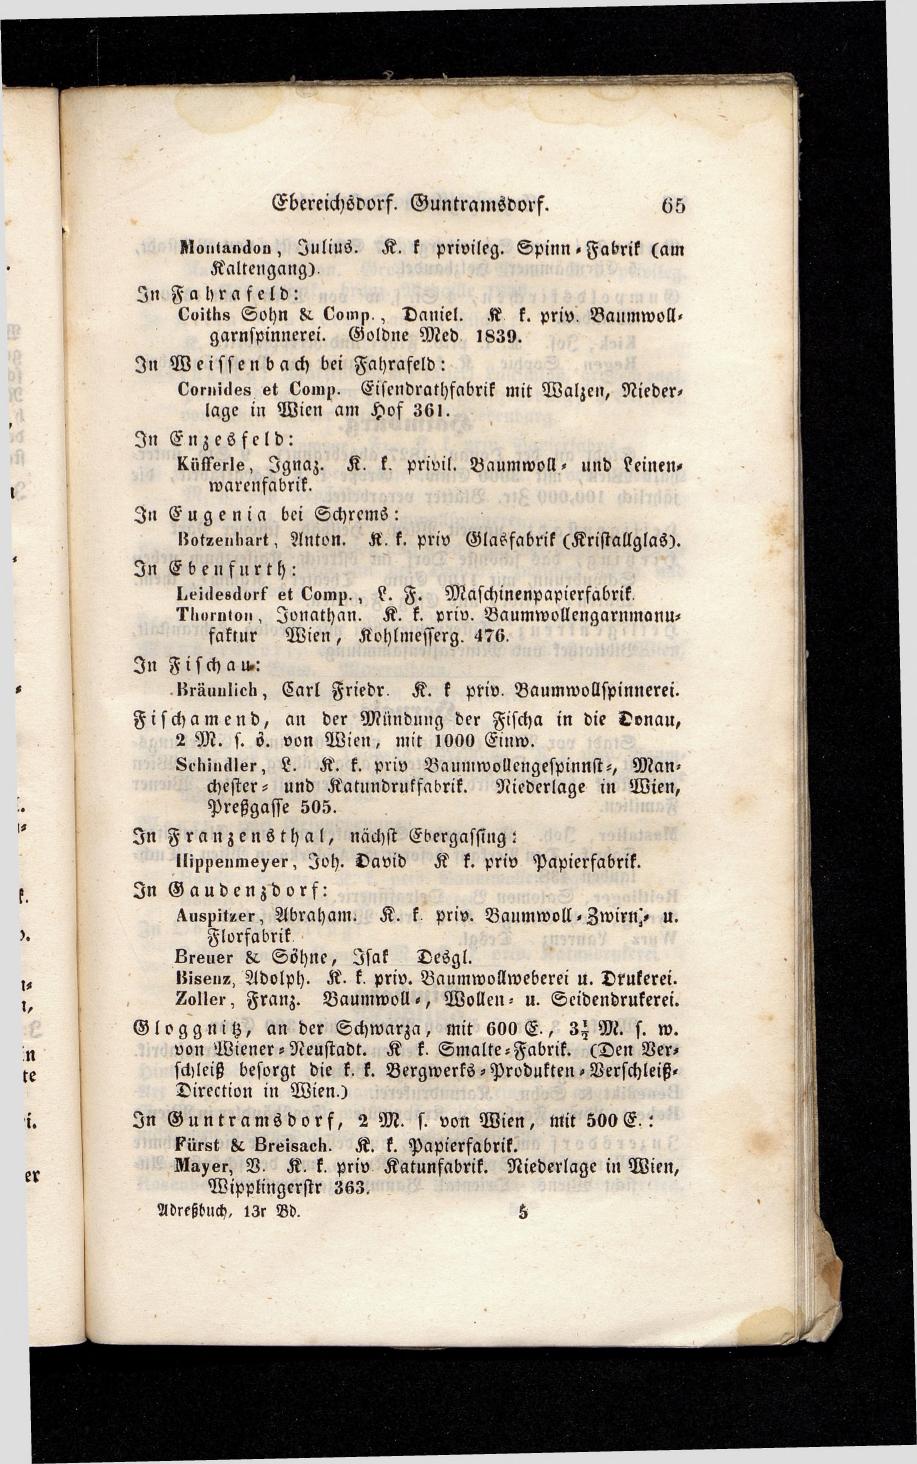 Grosses Adressbuch der Kaufleute. No. 13. Oesterreich ober u. unter der Enns 1844 - Seite 69